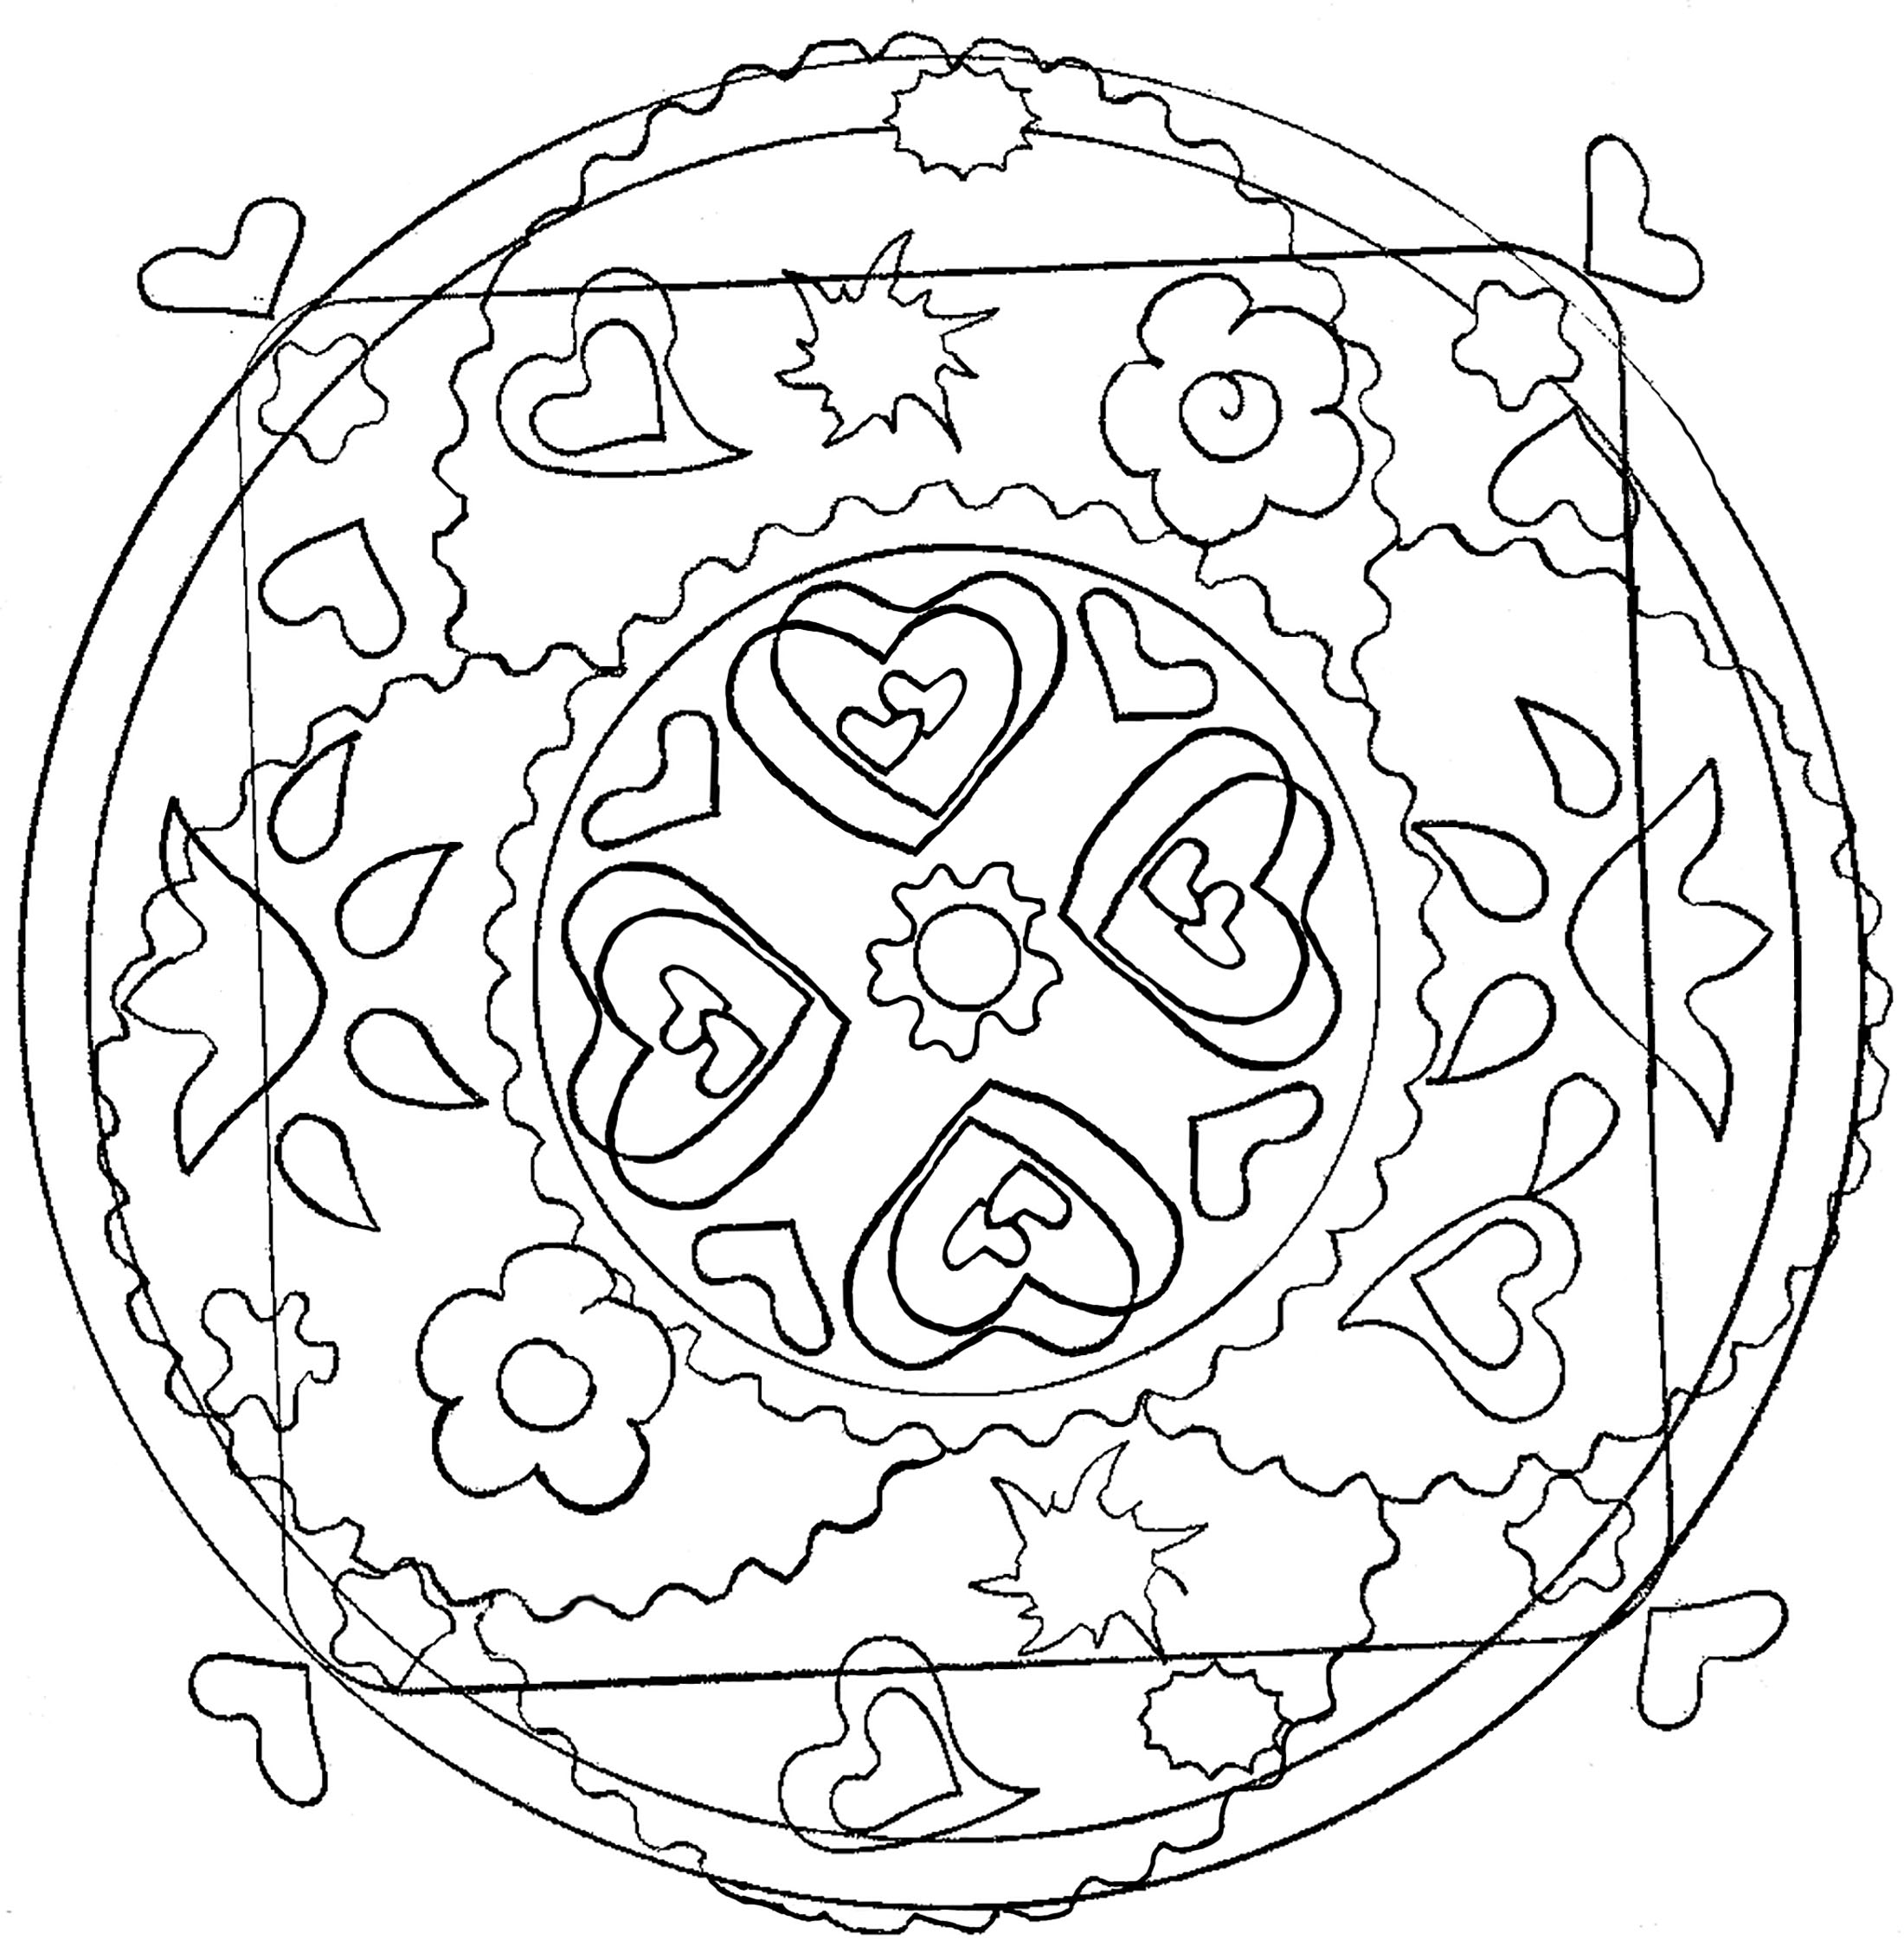 Un coloriage de Mandala pour les plus jeunes, faible niveau de difficulté. De larges zones facile à remplir.